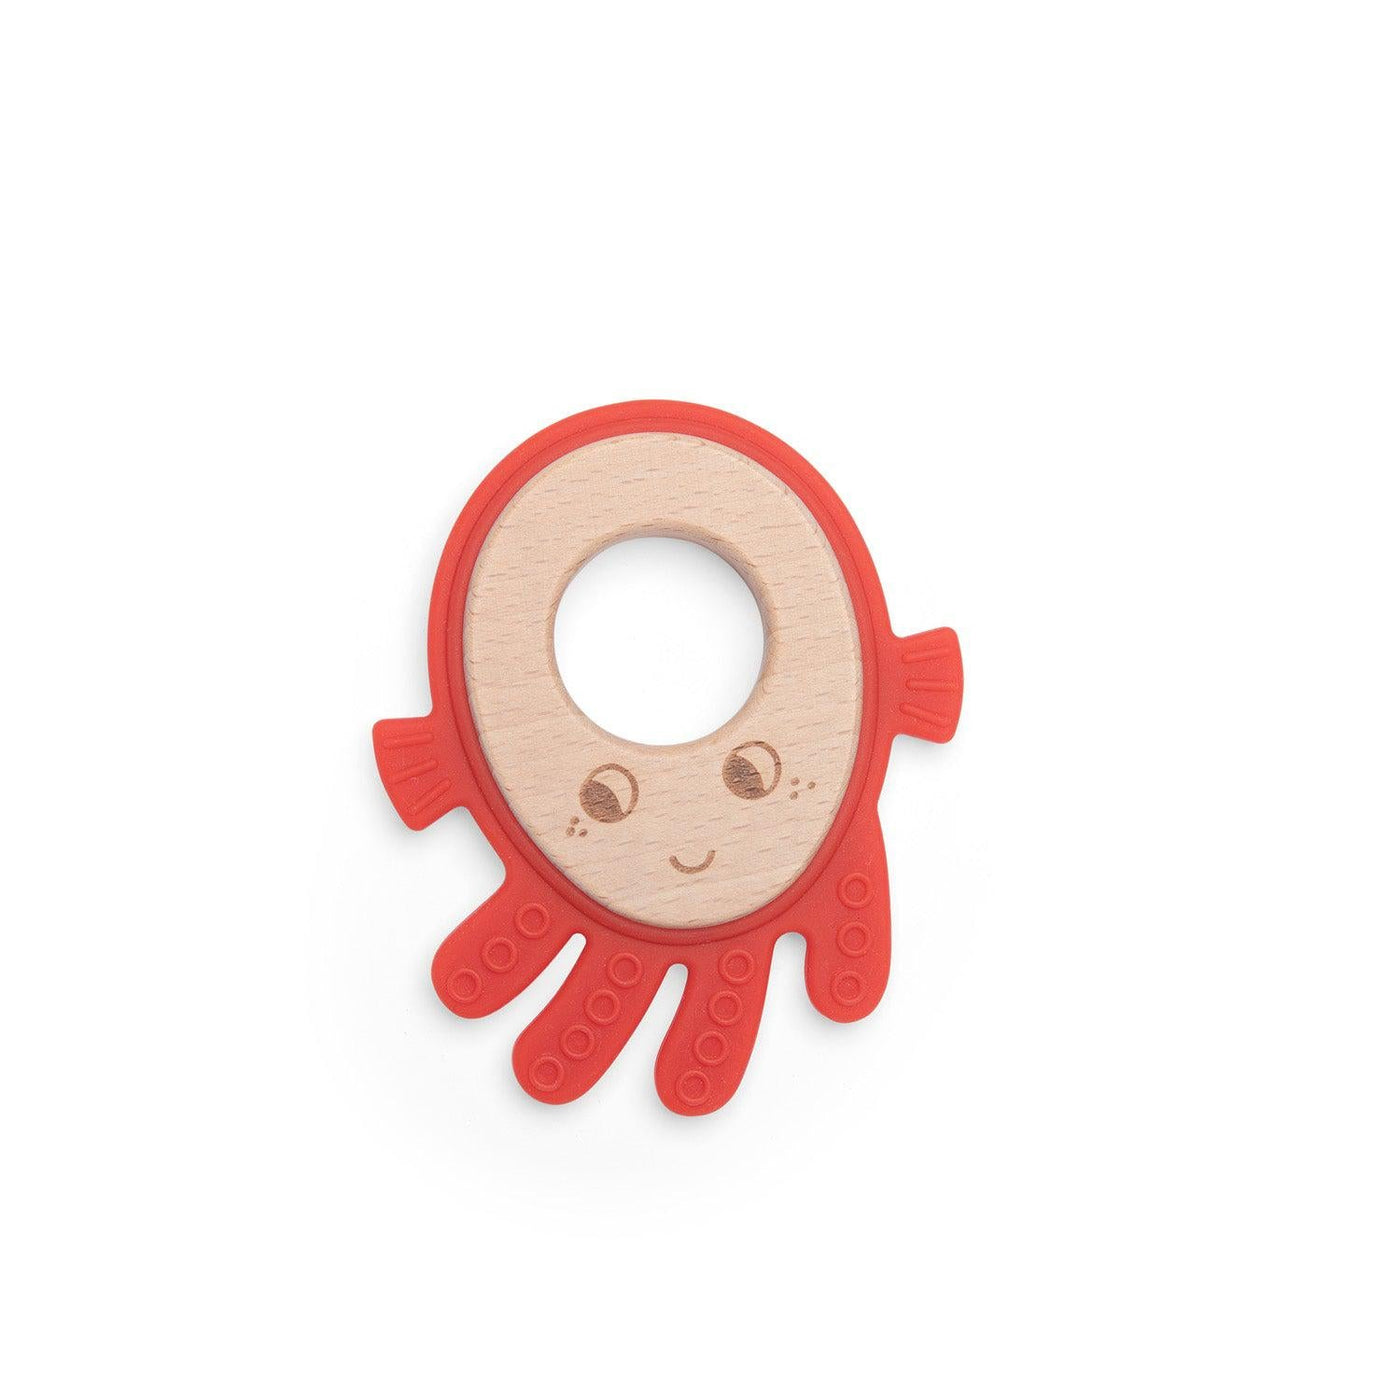 Octopus Teething Ring - Les Aventures de Paulie-Teethers-Moulin Roty-Yes Bebe